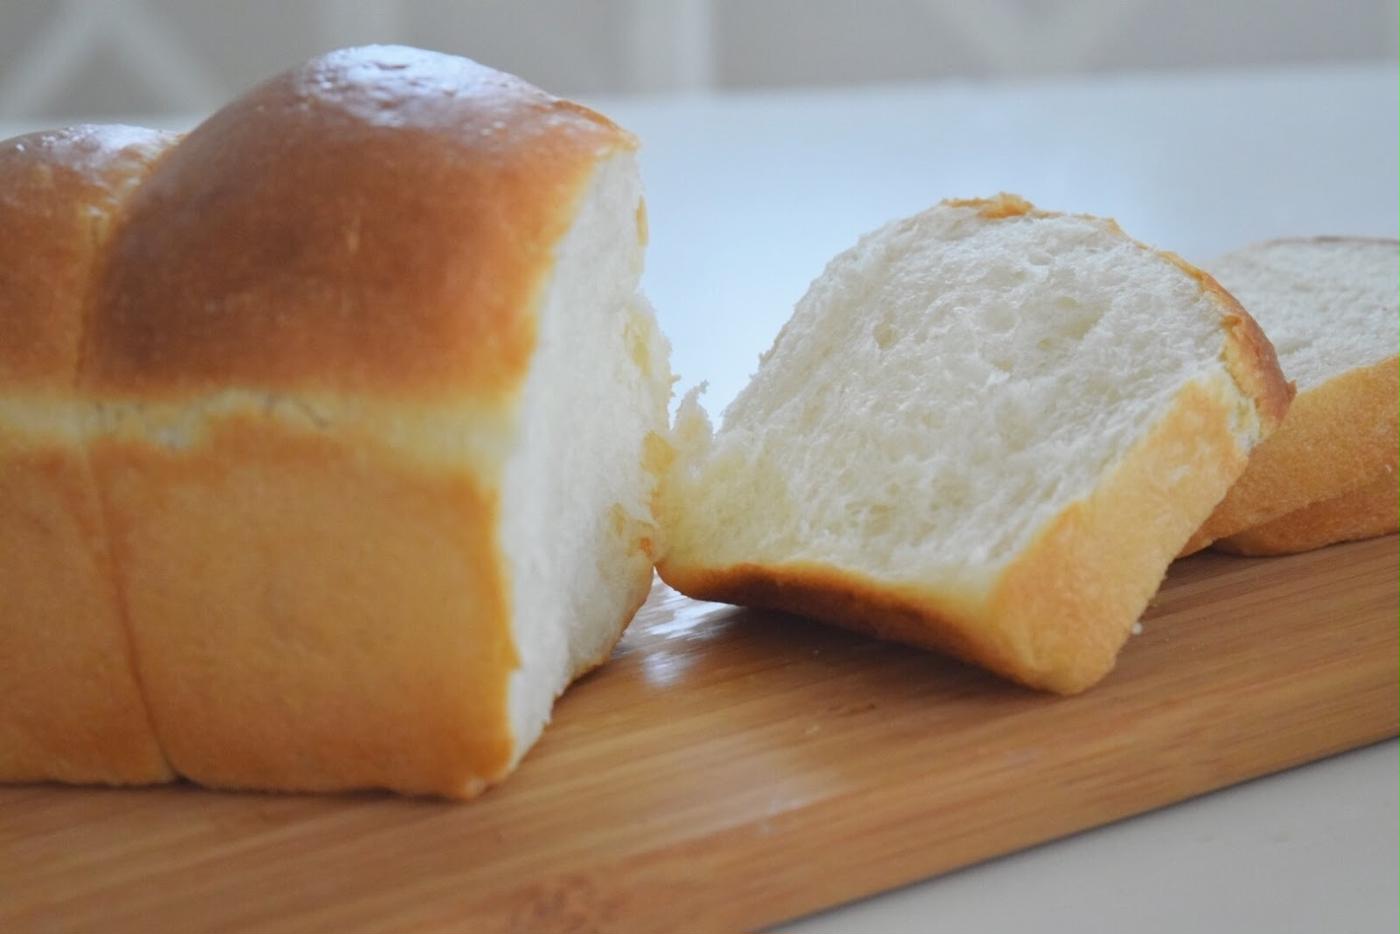 電子レンジ発酵で時短の手作り食パン パウンド型を使う簡単レシピ トクバイニュース